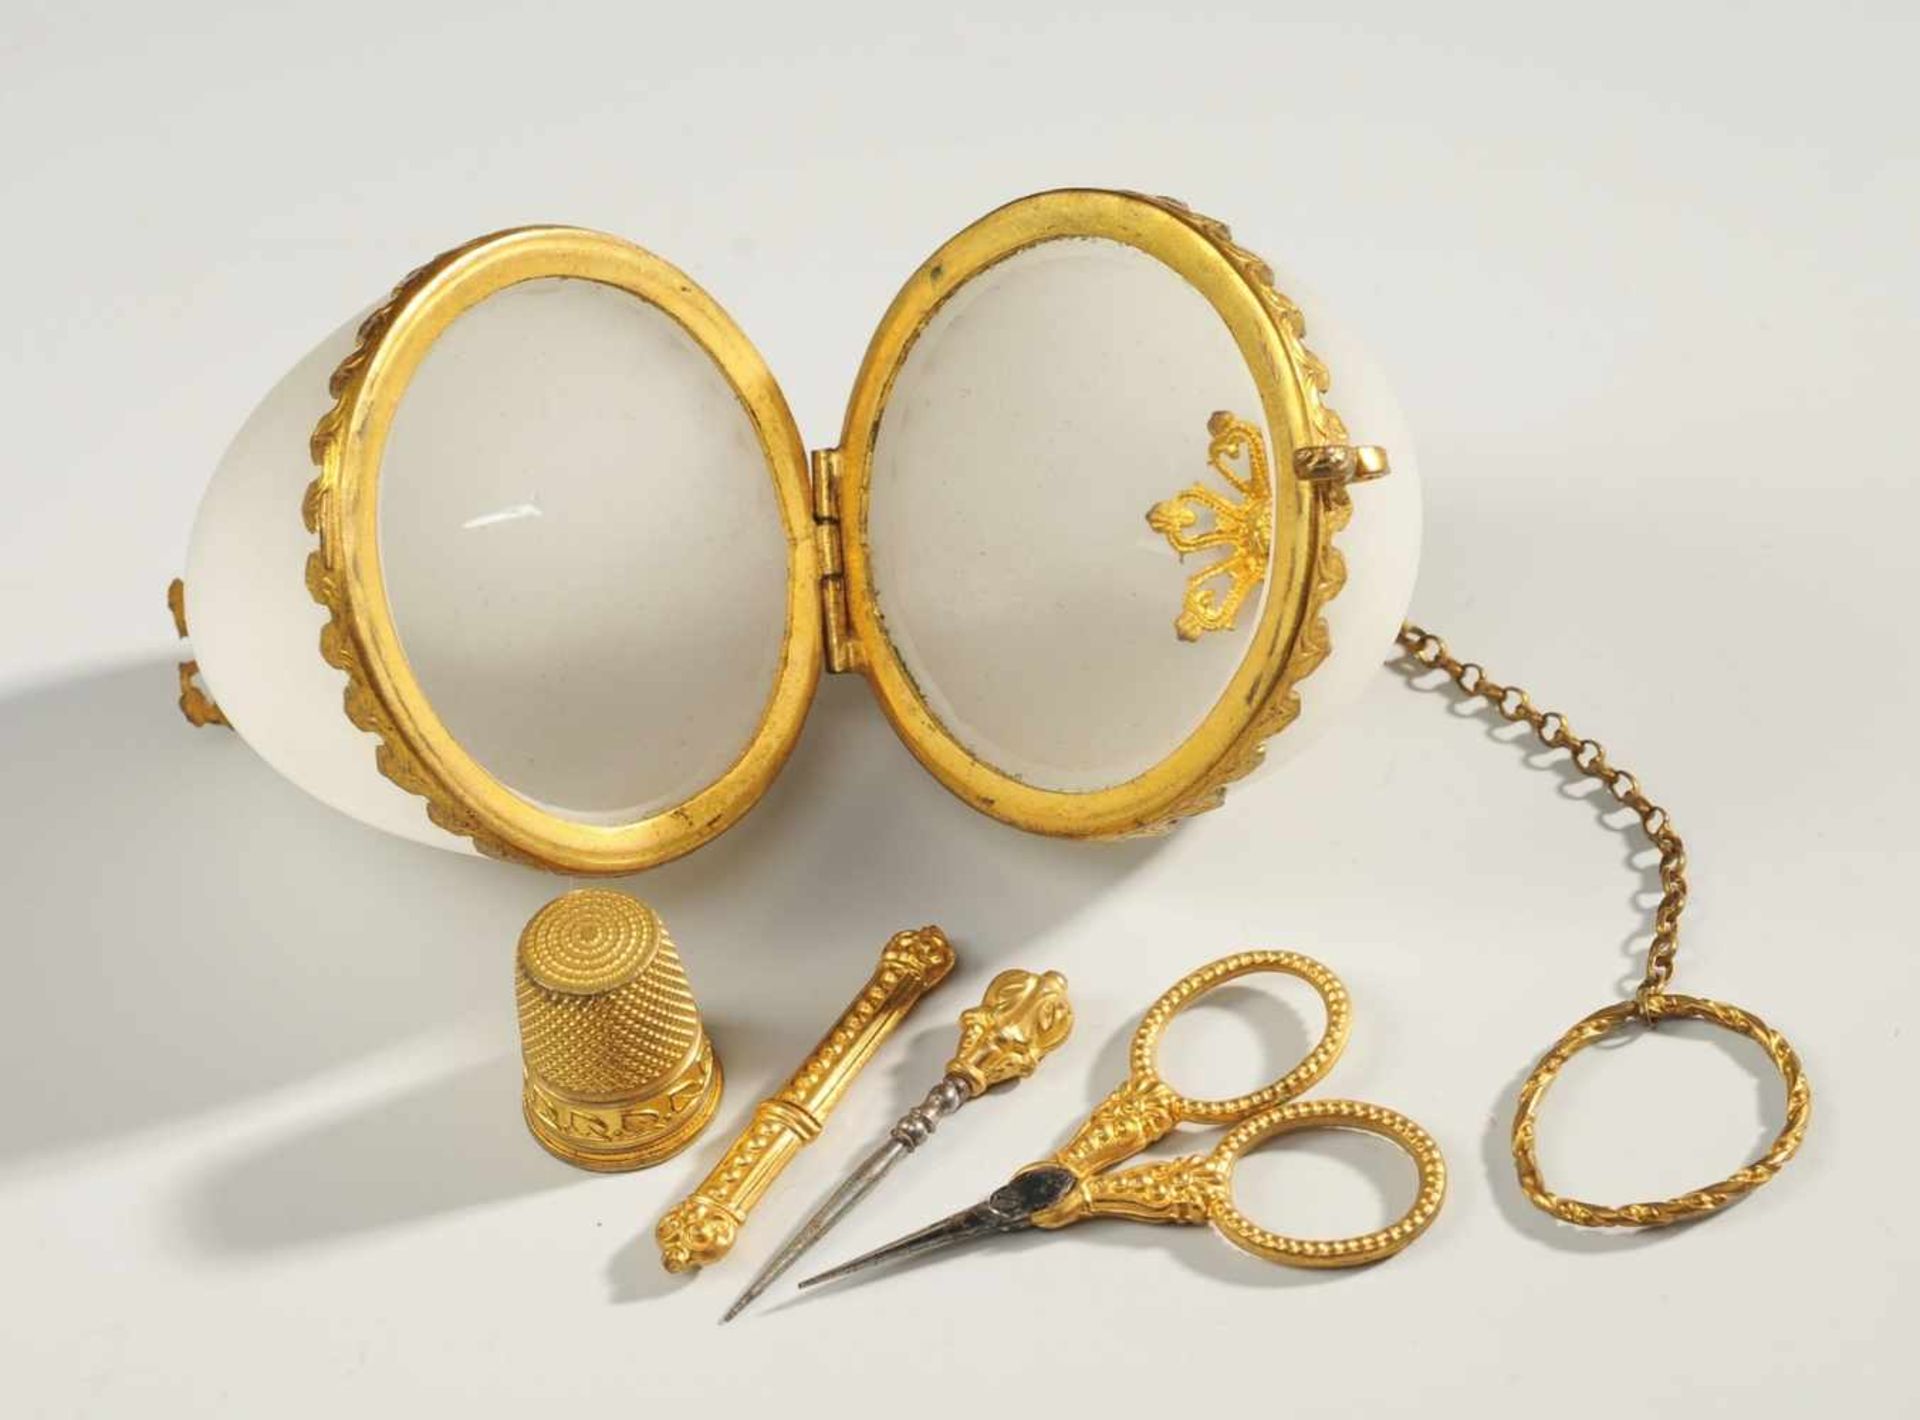 Historisches NähnecessaireAlabasterglas, außen mattiert, mit goldfarbener Metallmontierung.